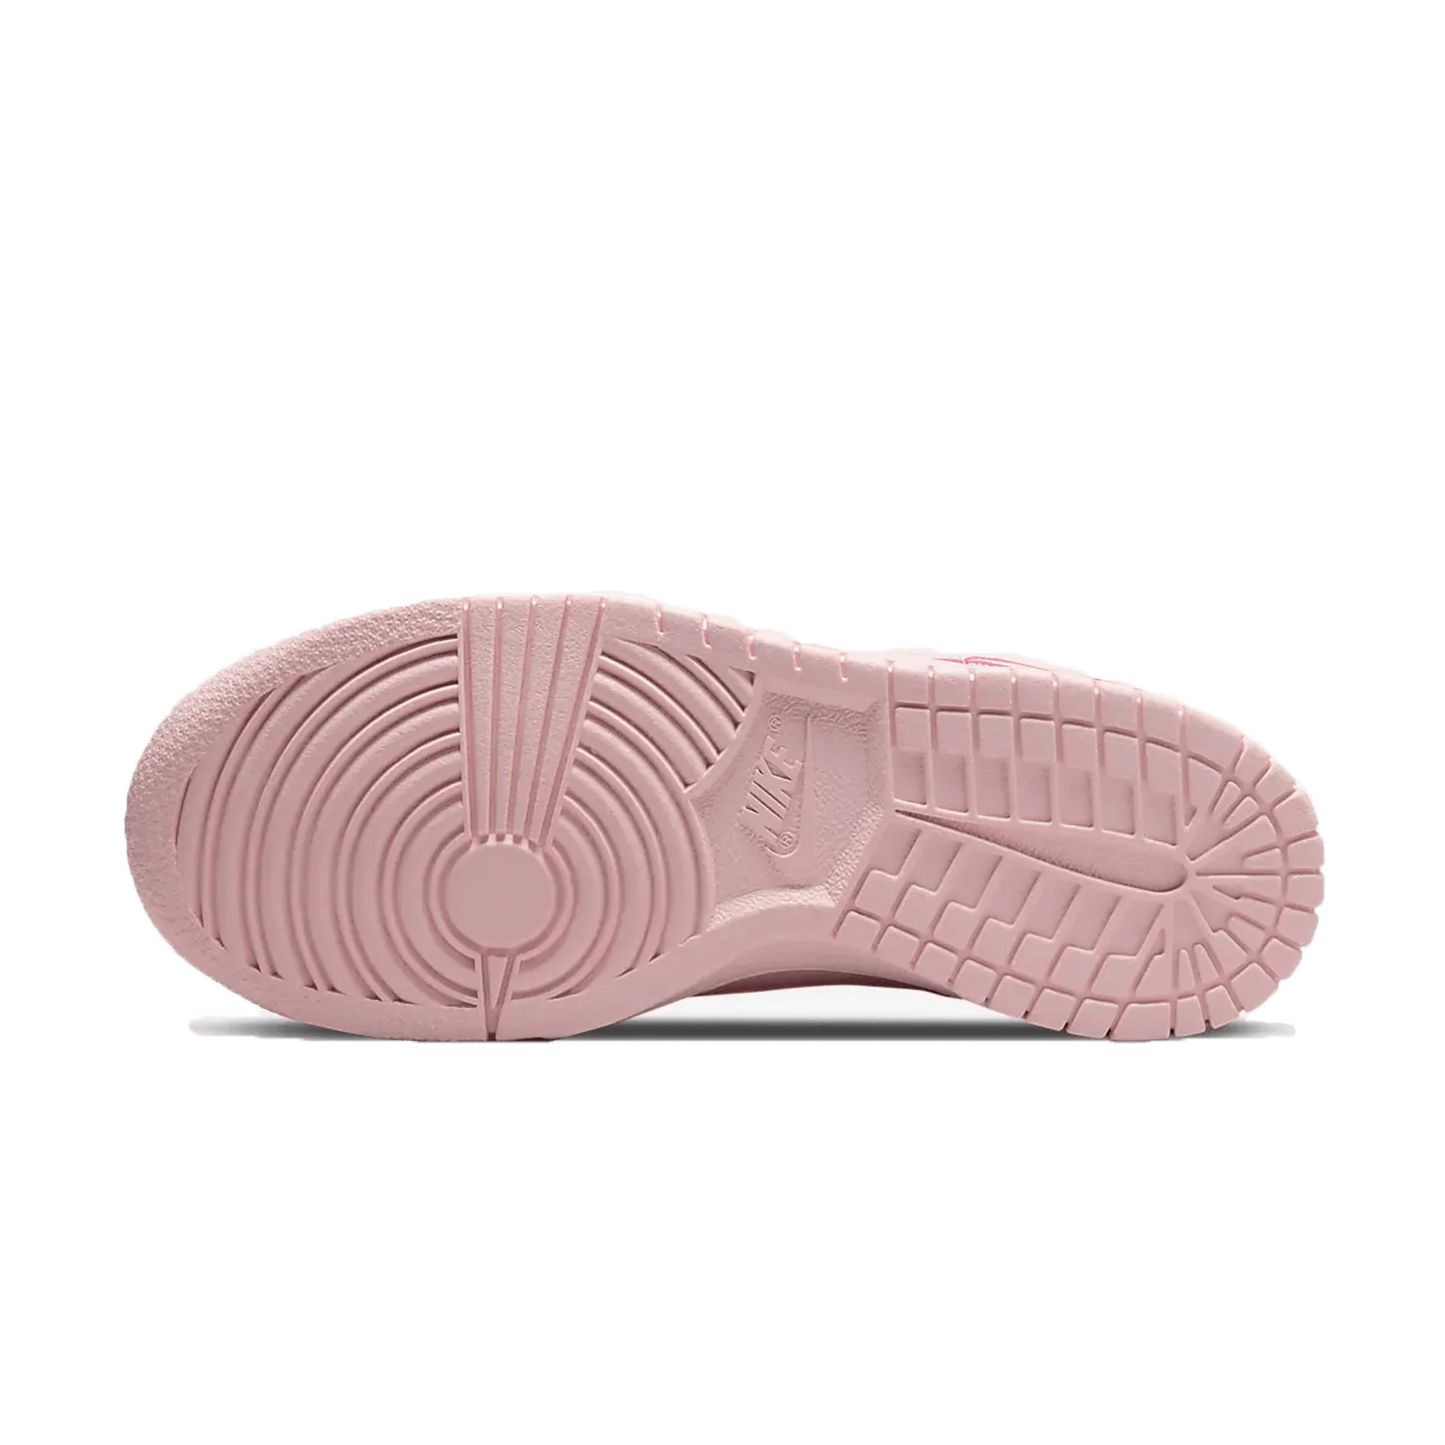 Nike Dunk Low GS ‘Prism Pink’